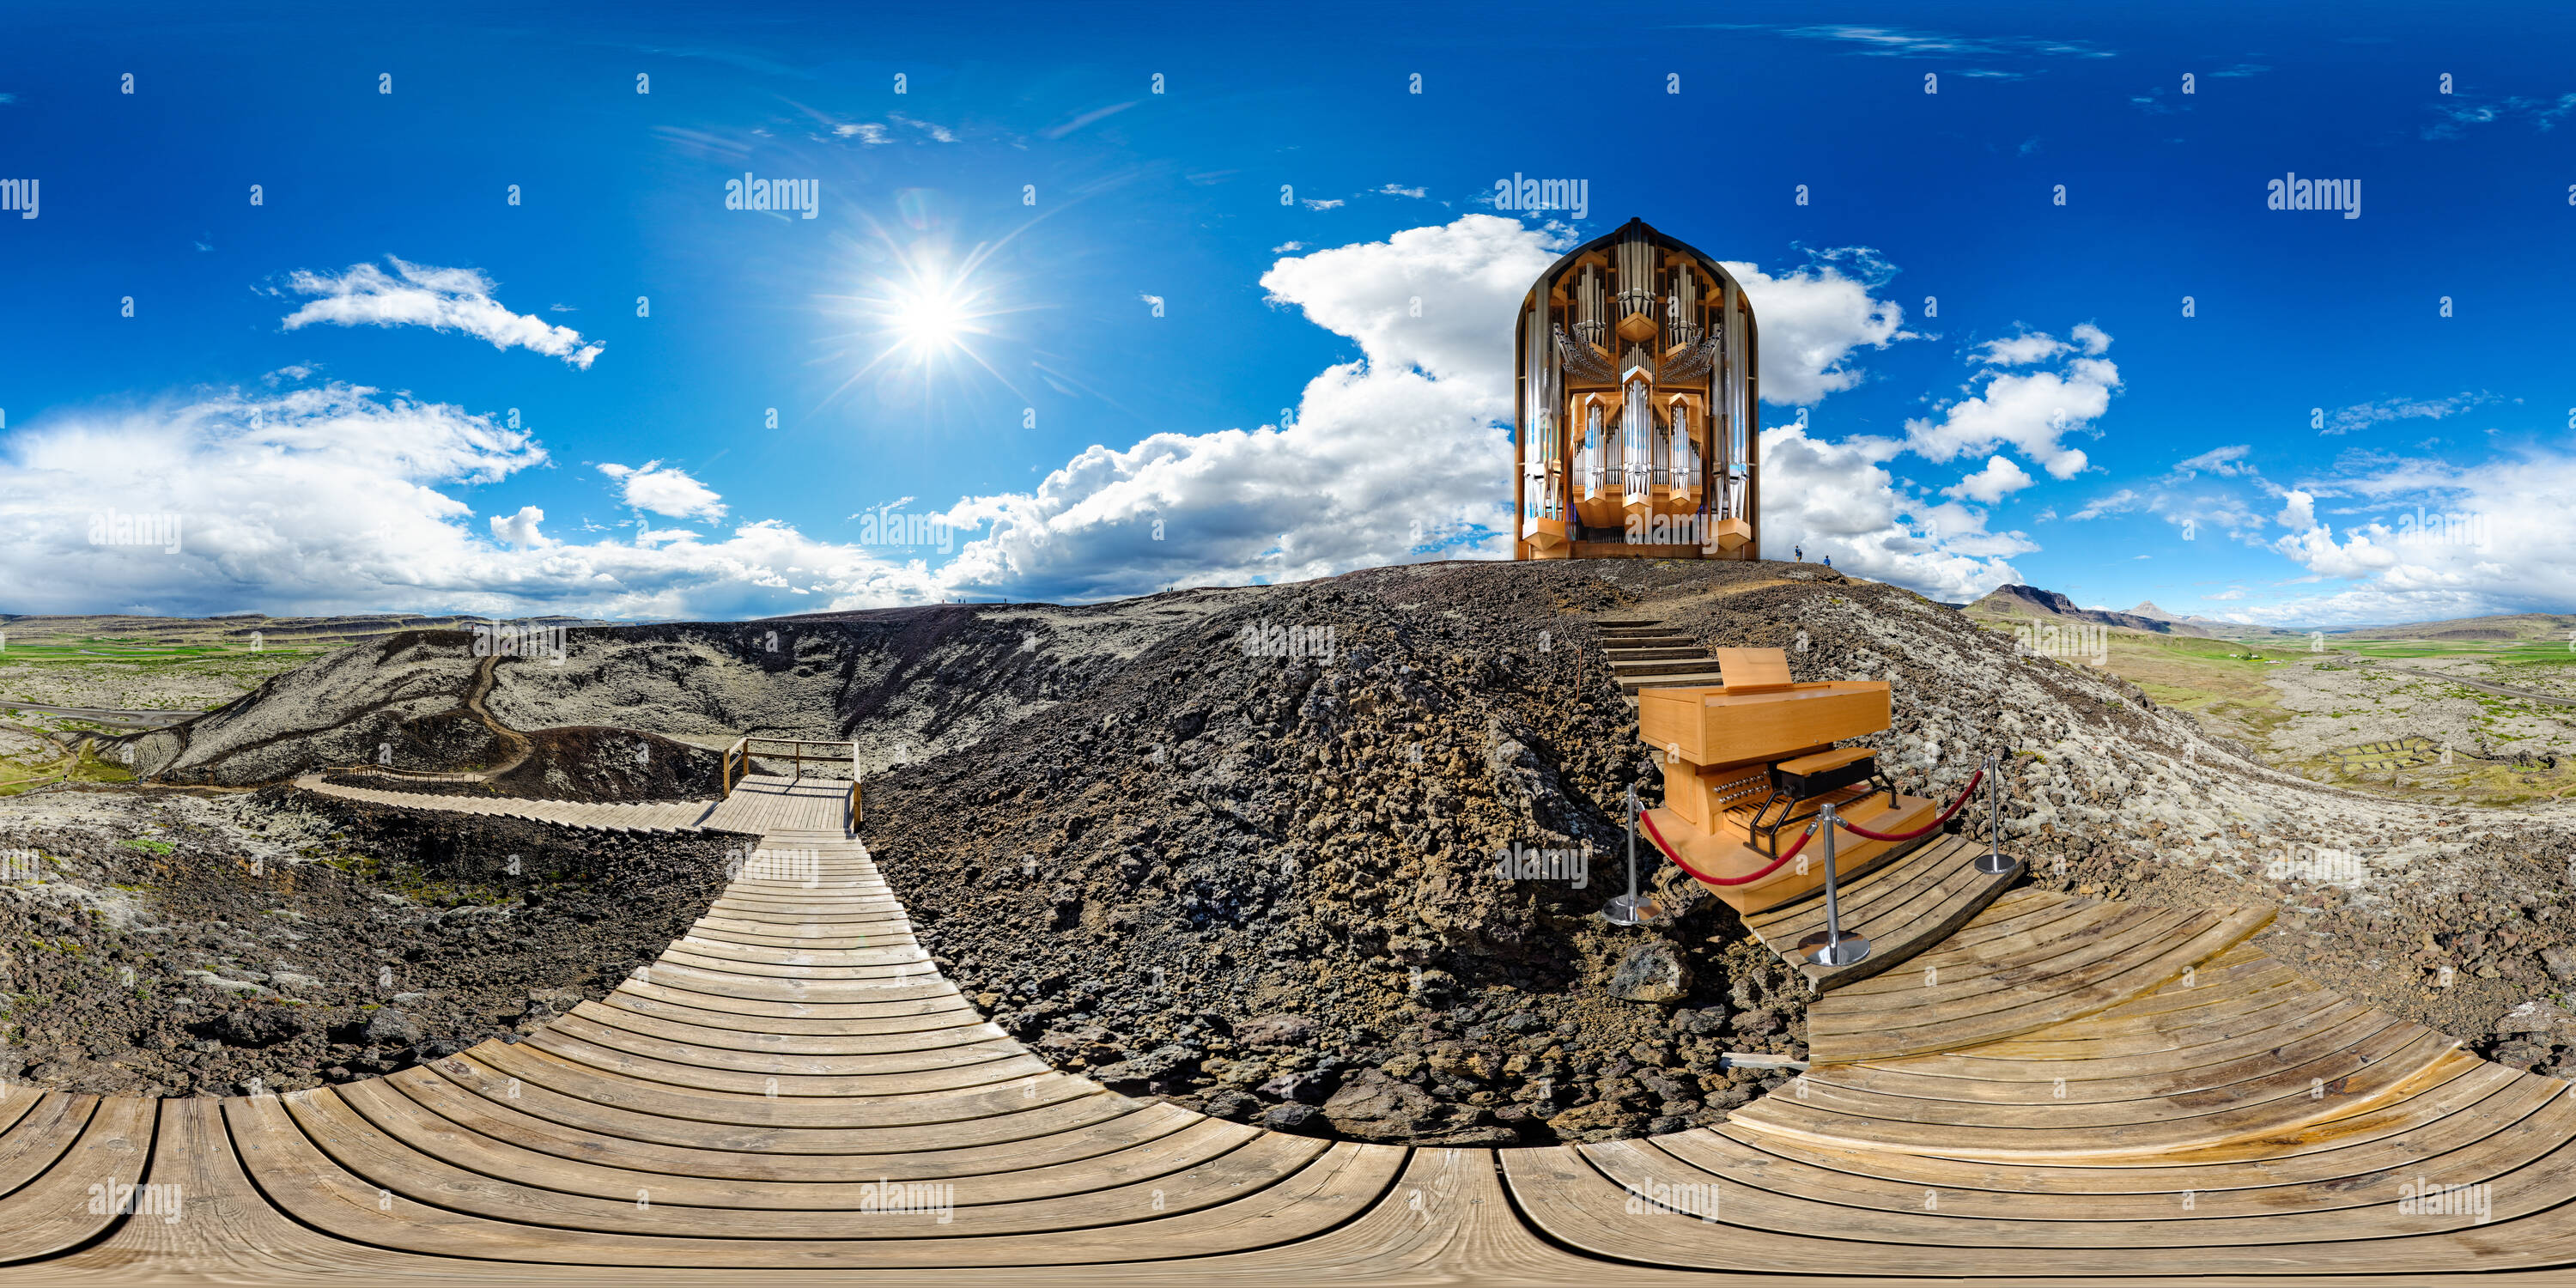 360 Grad Panorama Ansicht von Die hallgrímskirkja Orgel/Vulkan - Innerhalb/Außerhalb Islands